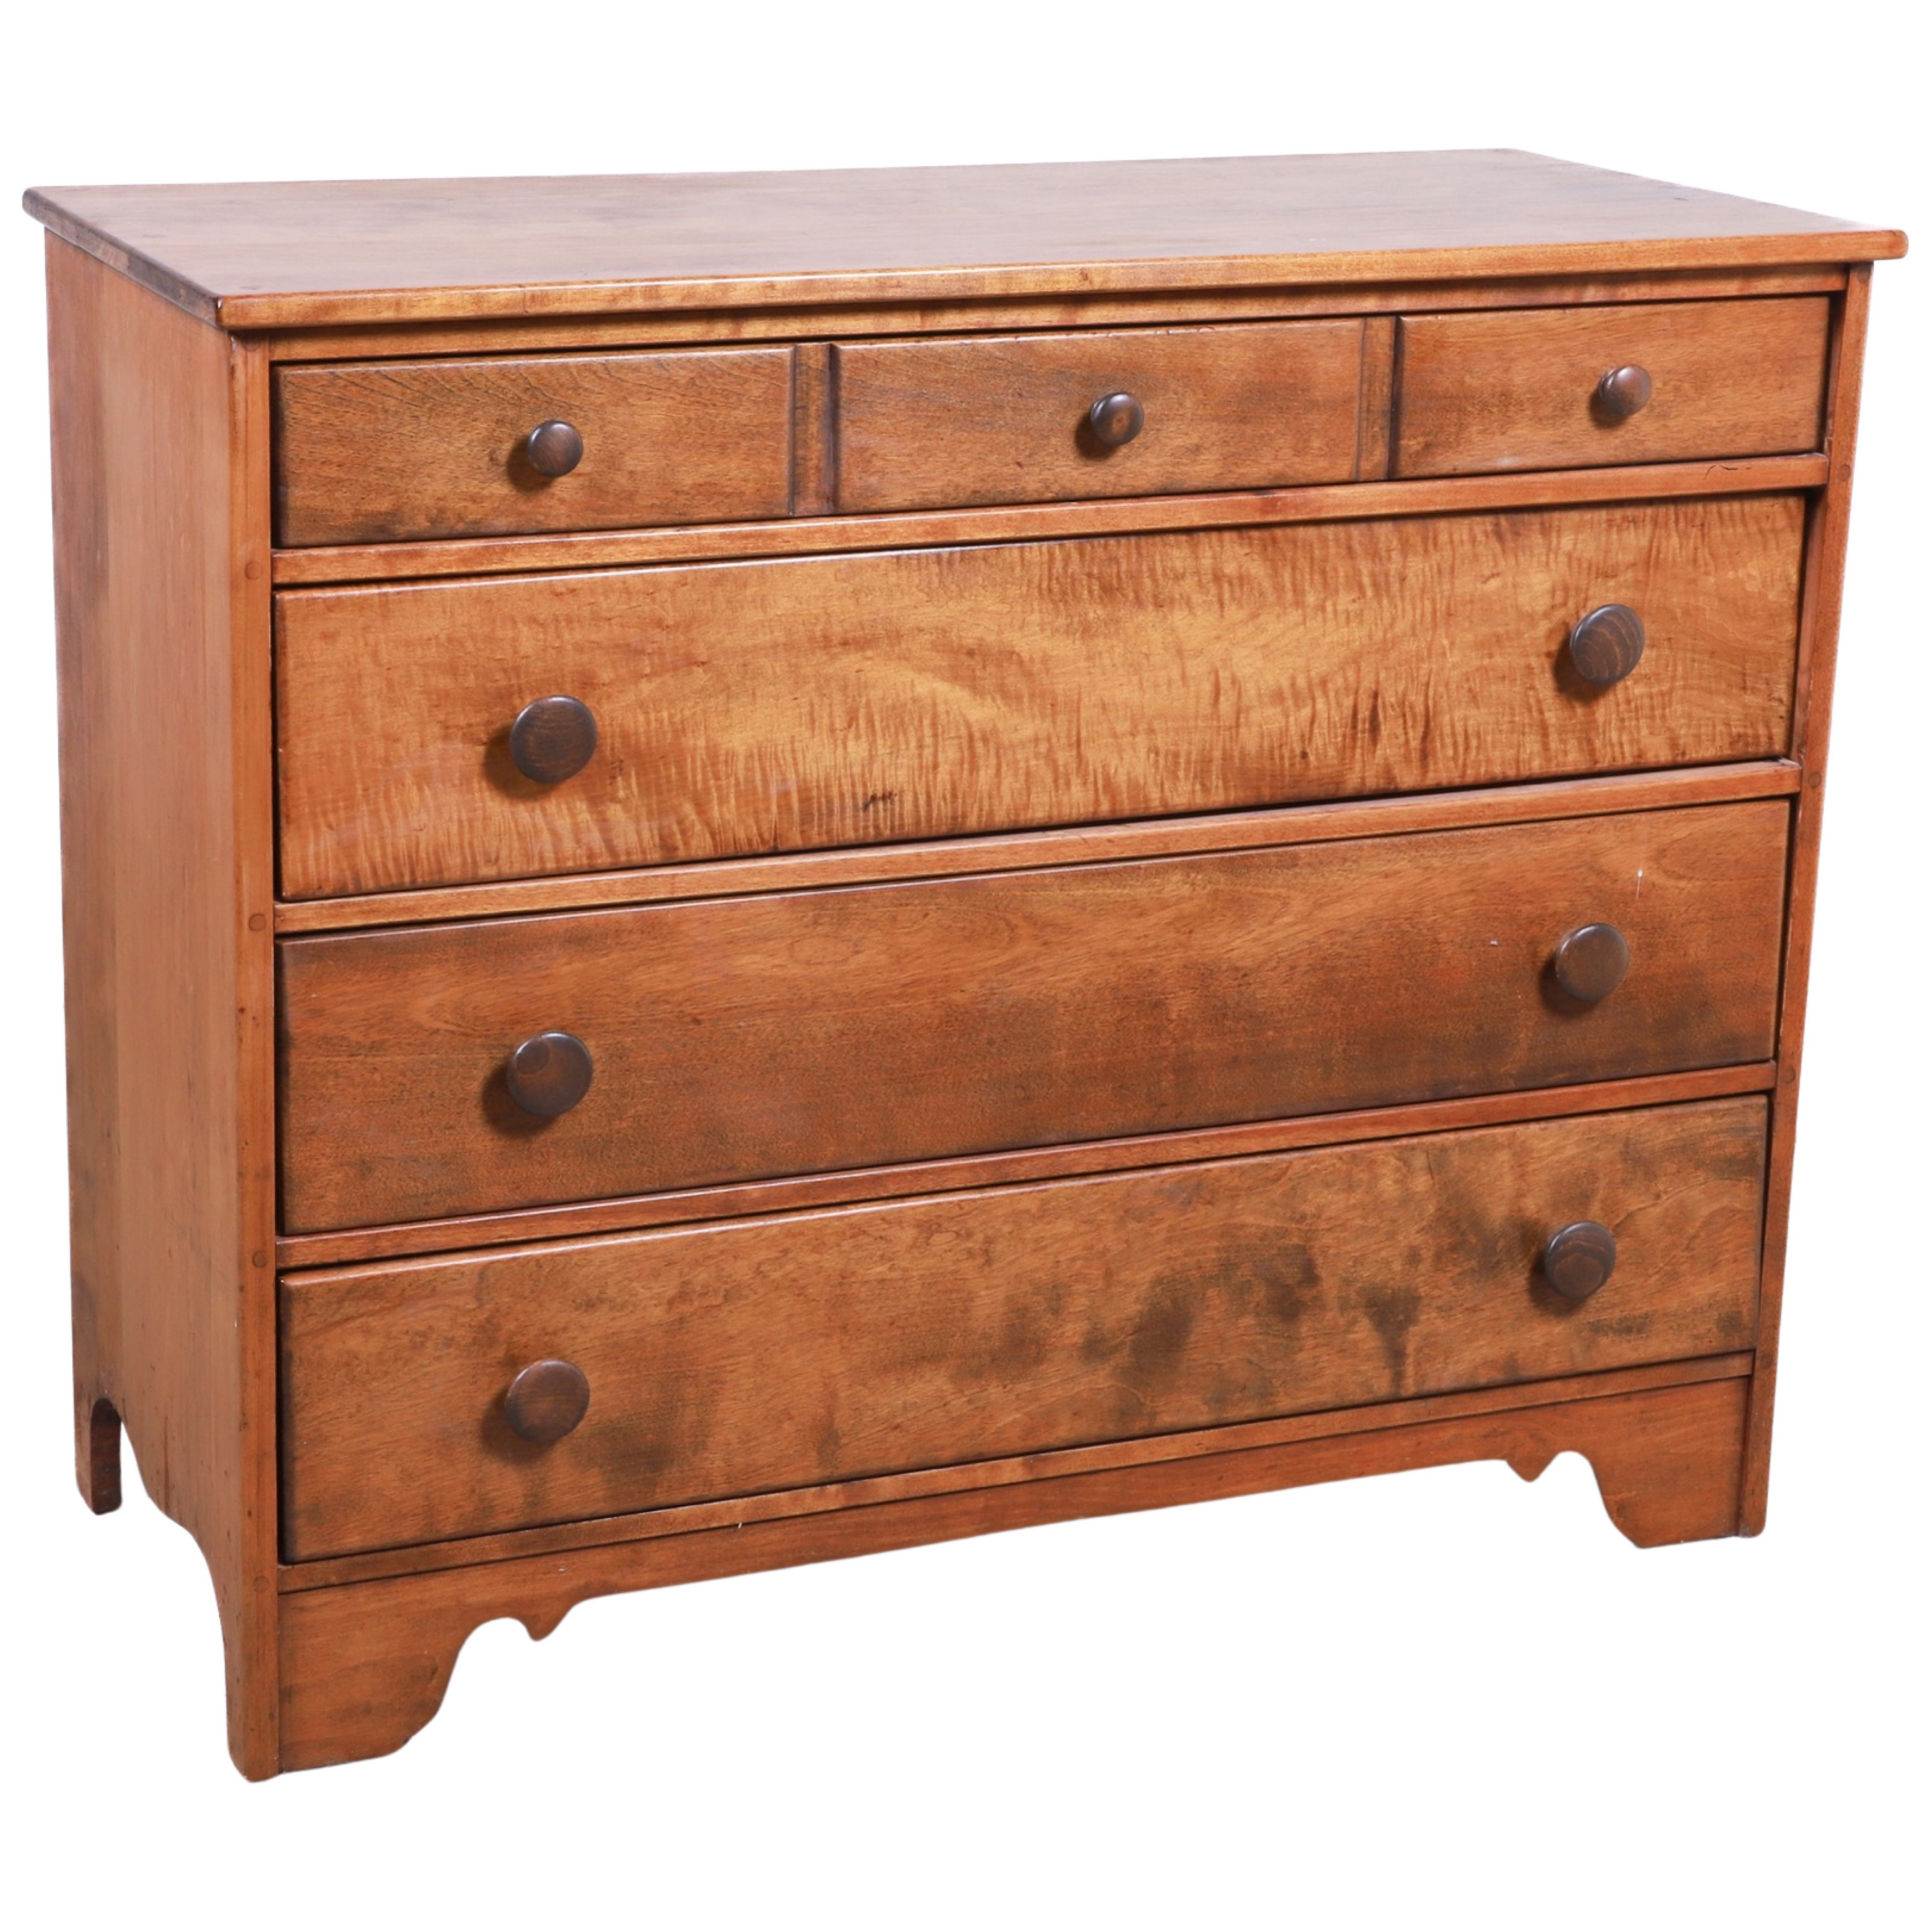 Maple 4-drawer chest, 35"h x 41-1/2"w